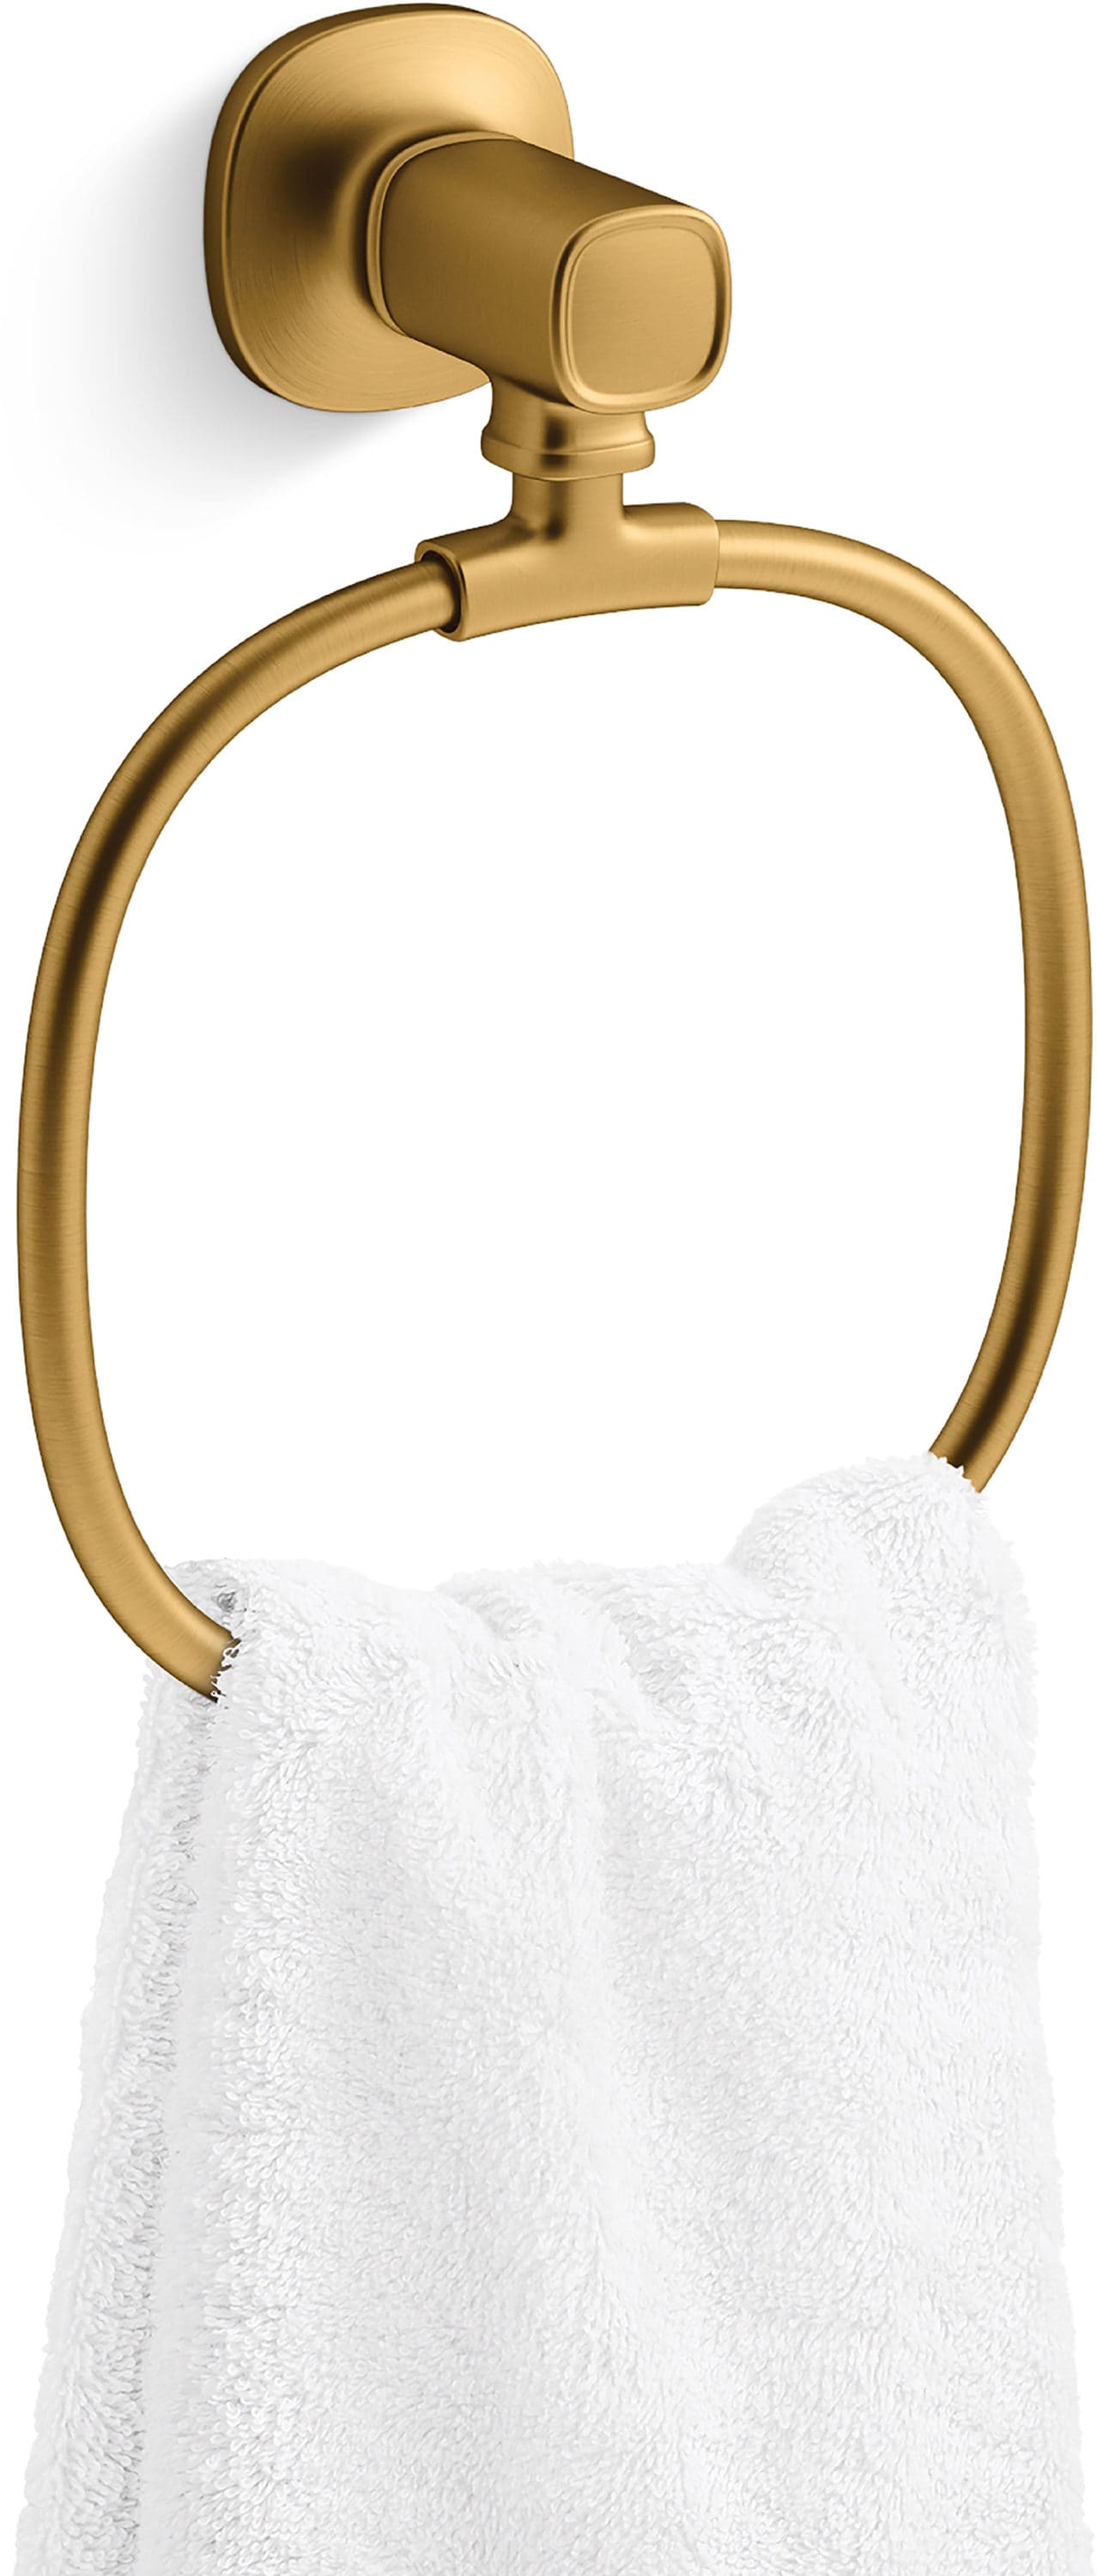 Damon Modern Brushed Brass Towel Ring + Reviews